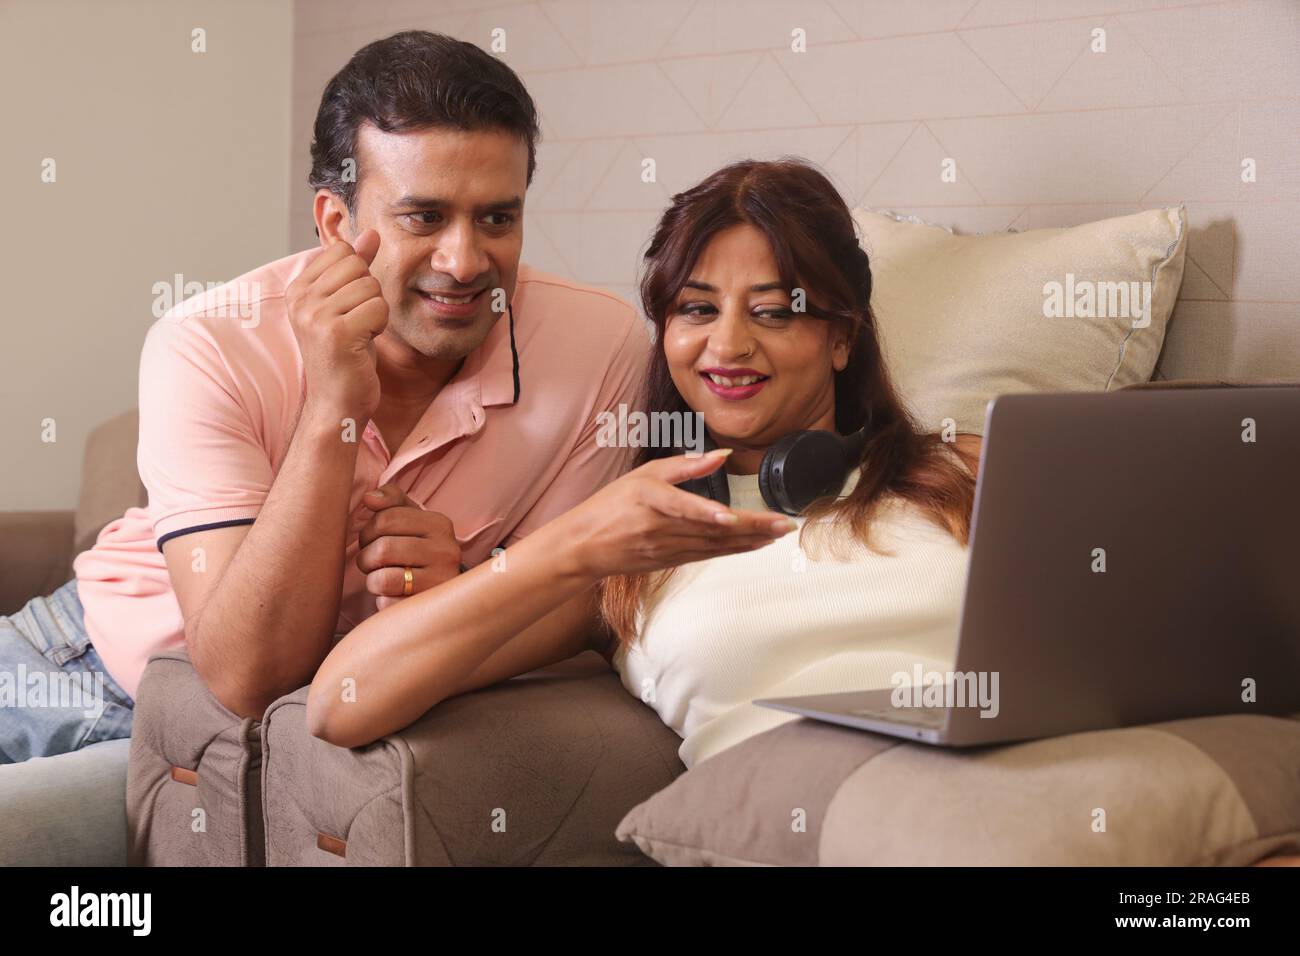 Indiano coppia felice mangiare insalata e dieta sana seduti su un divano tenendo un portatile navigare online. Foto Stock